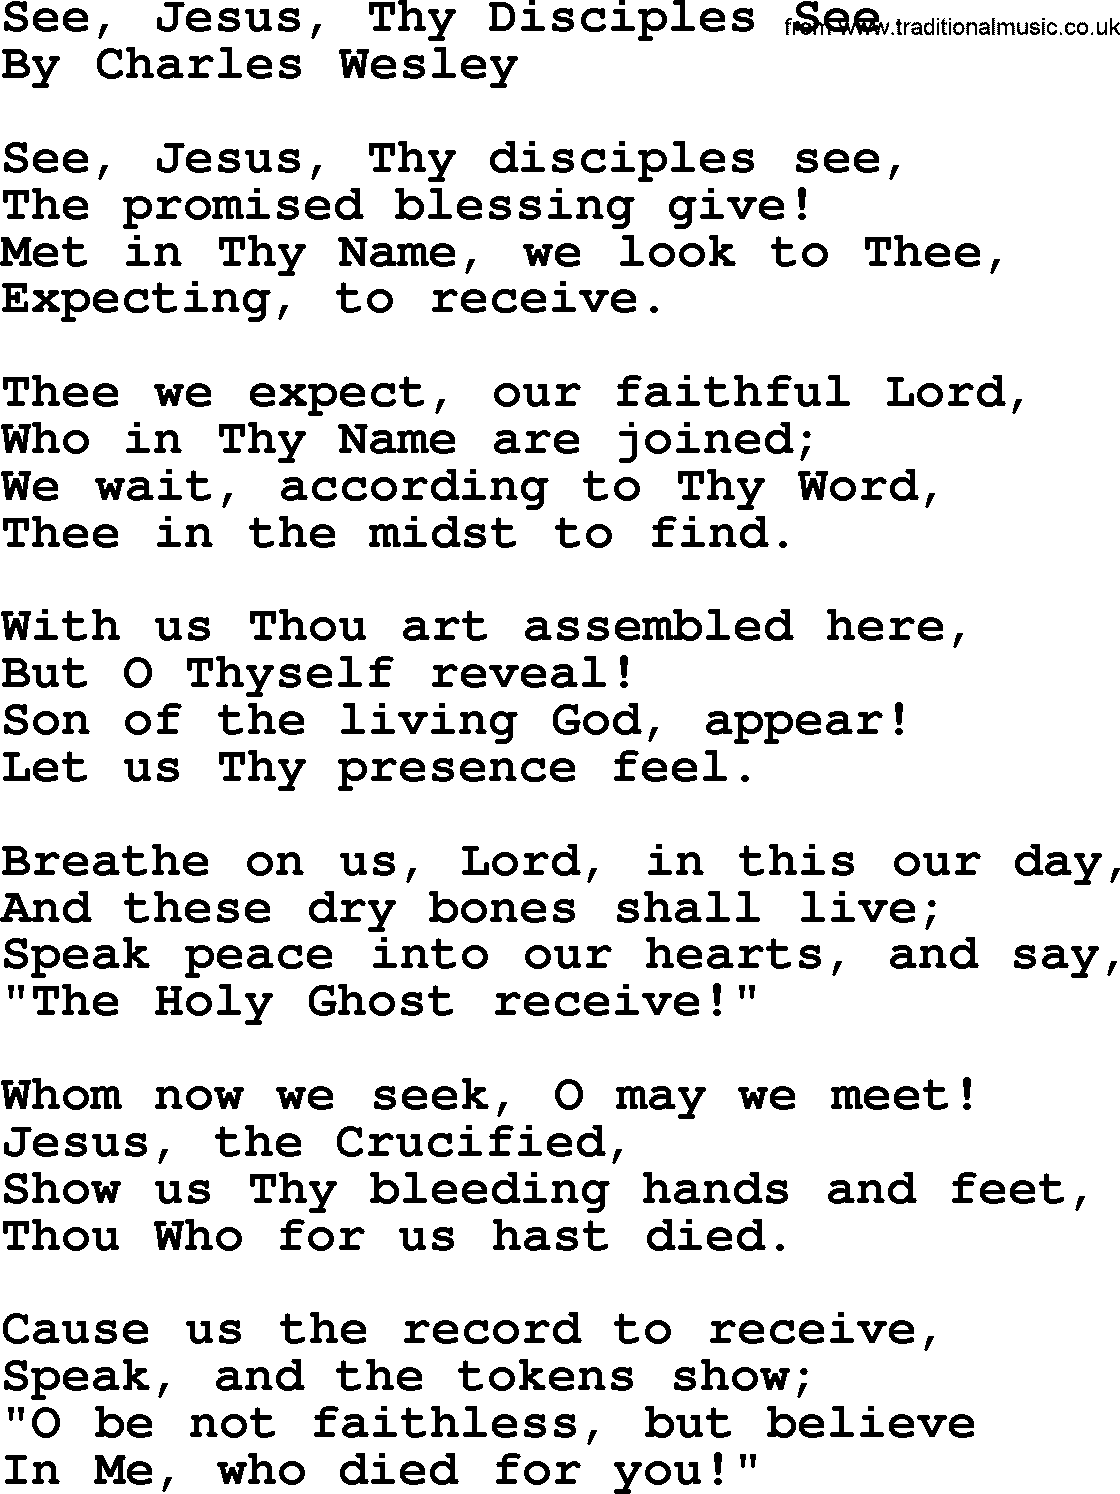 Charles Wesley hymn: See, Jesus, Thy Disciples See, lyrics